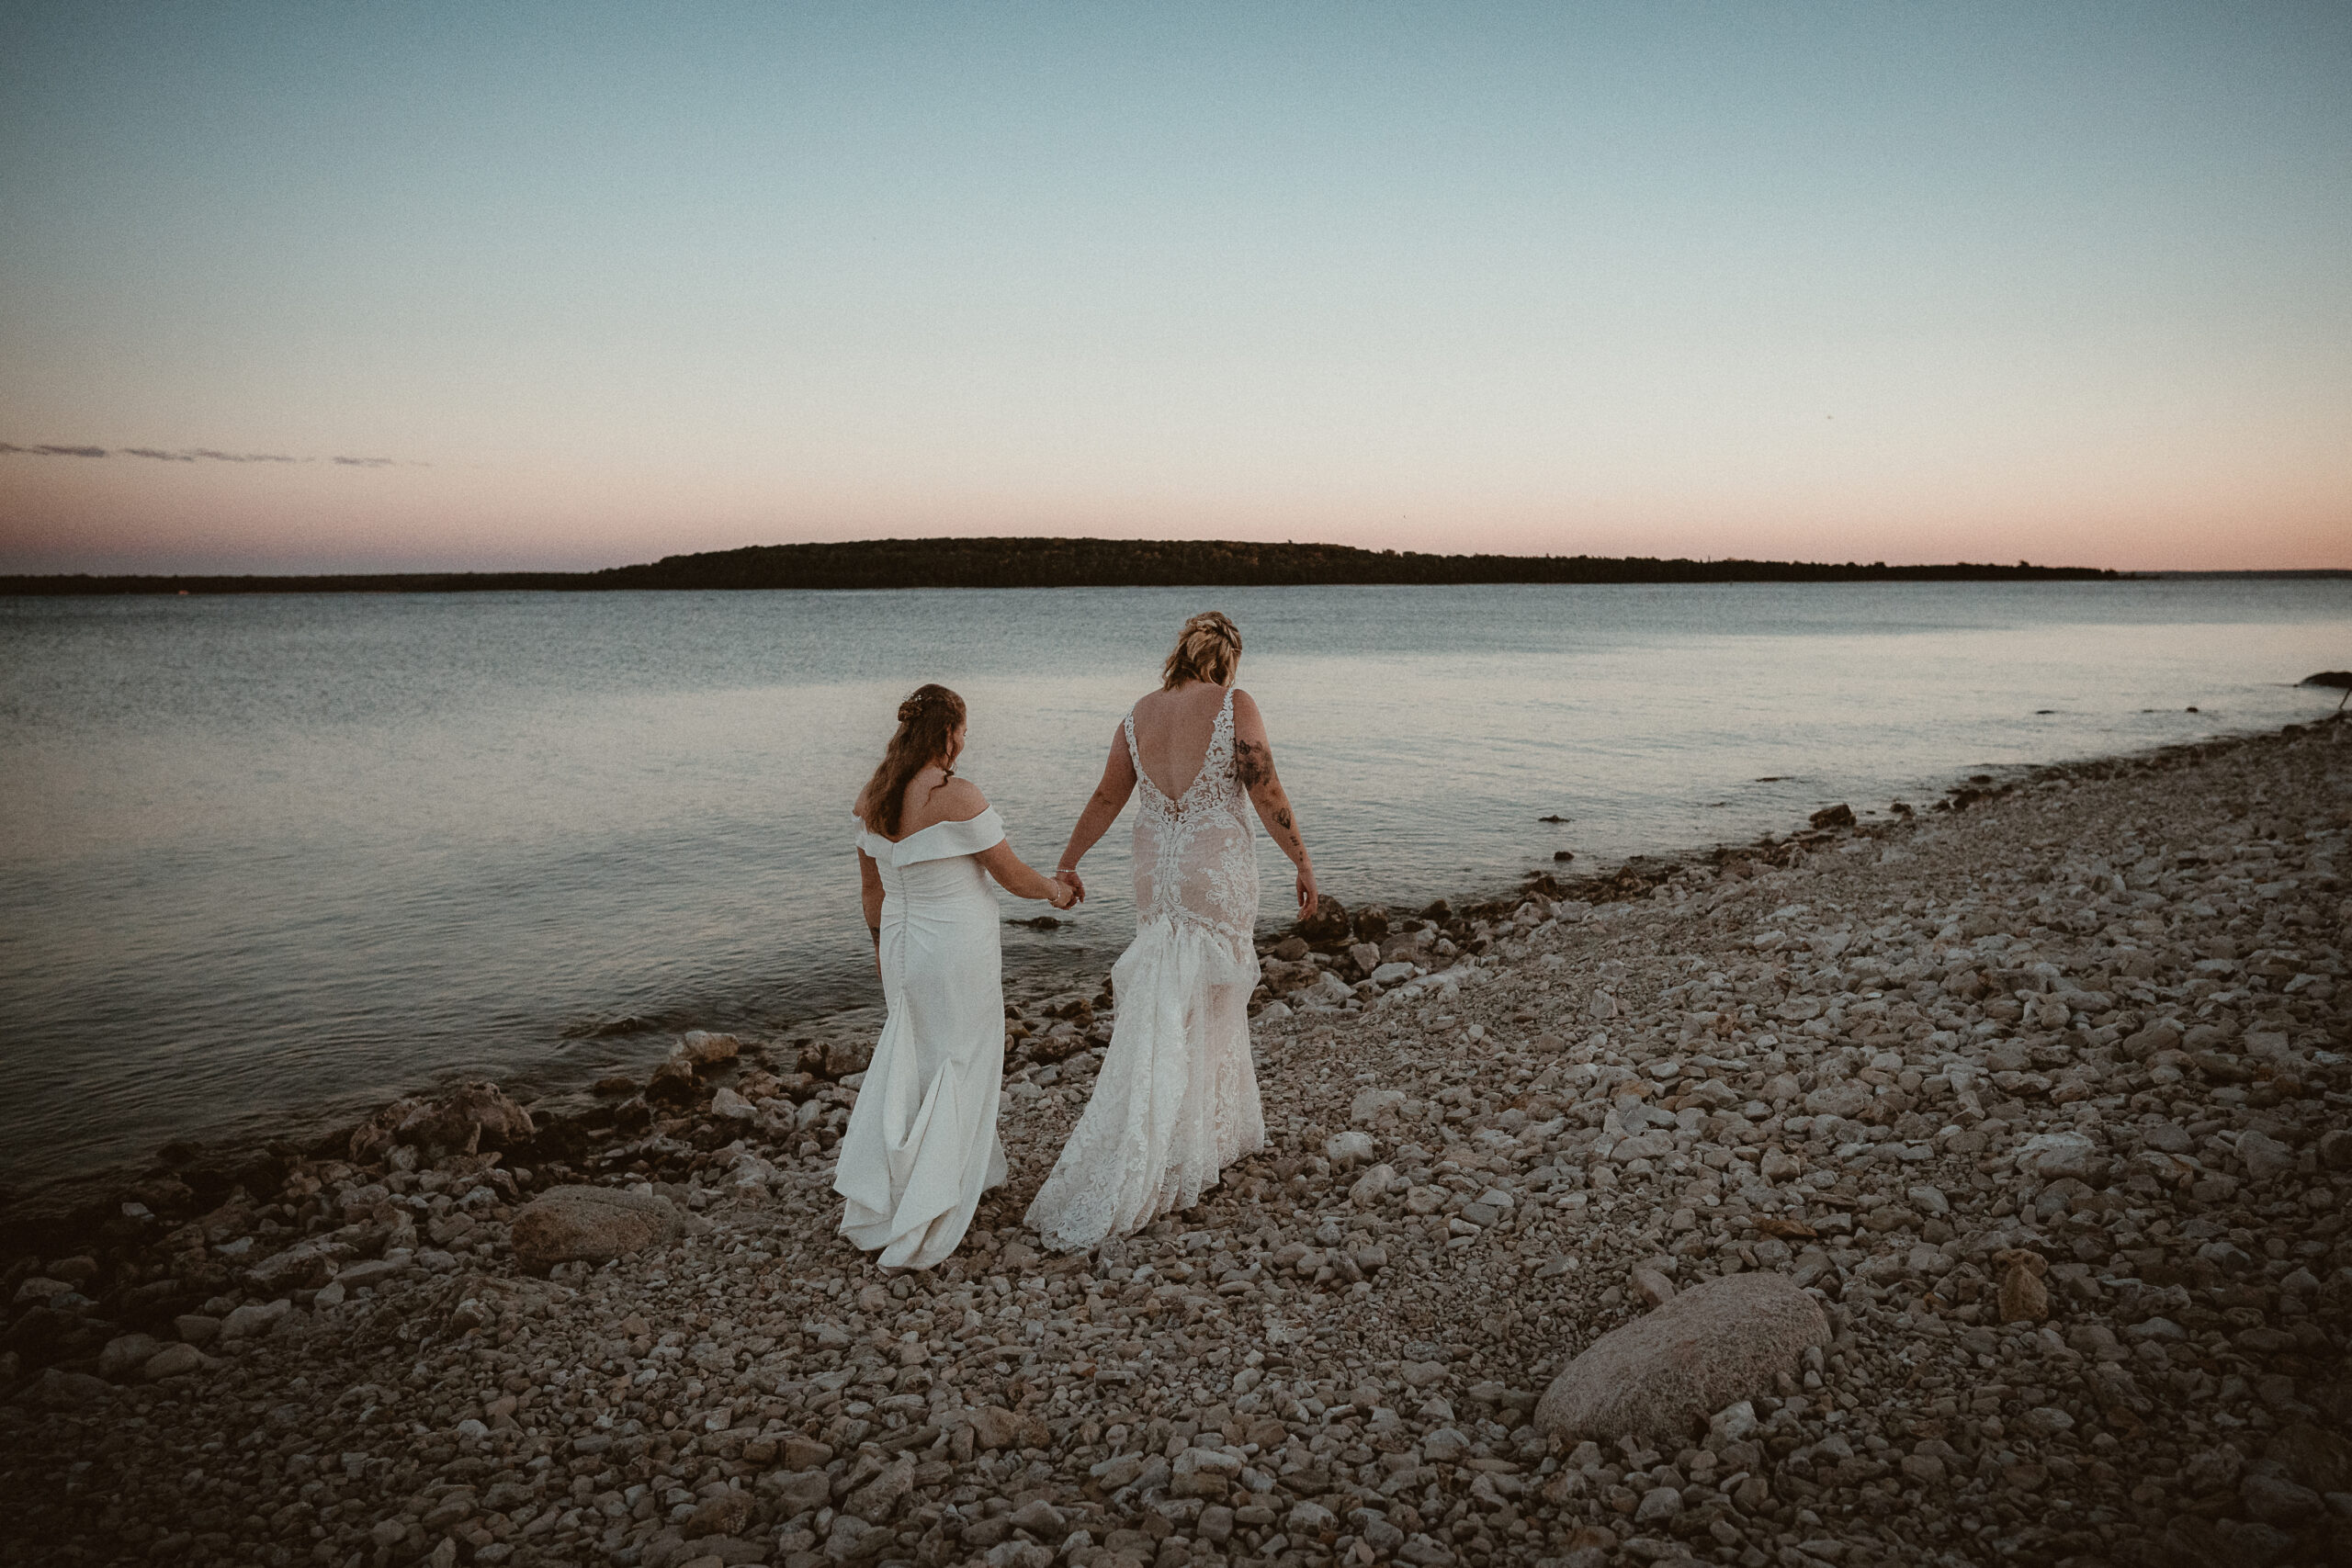 Brides walking holding hands along Lake Huron at sunset.